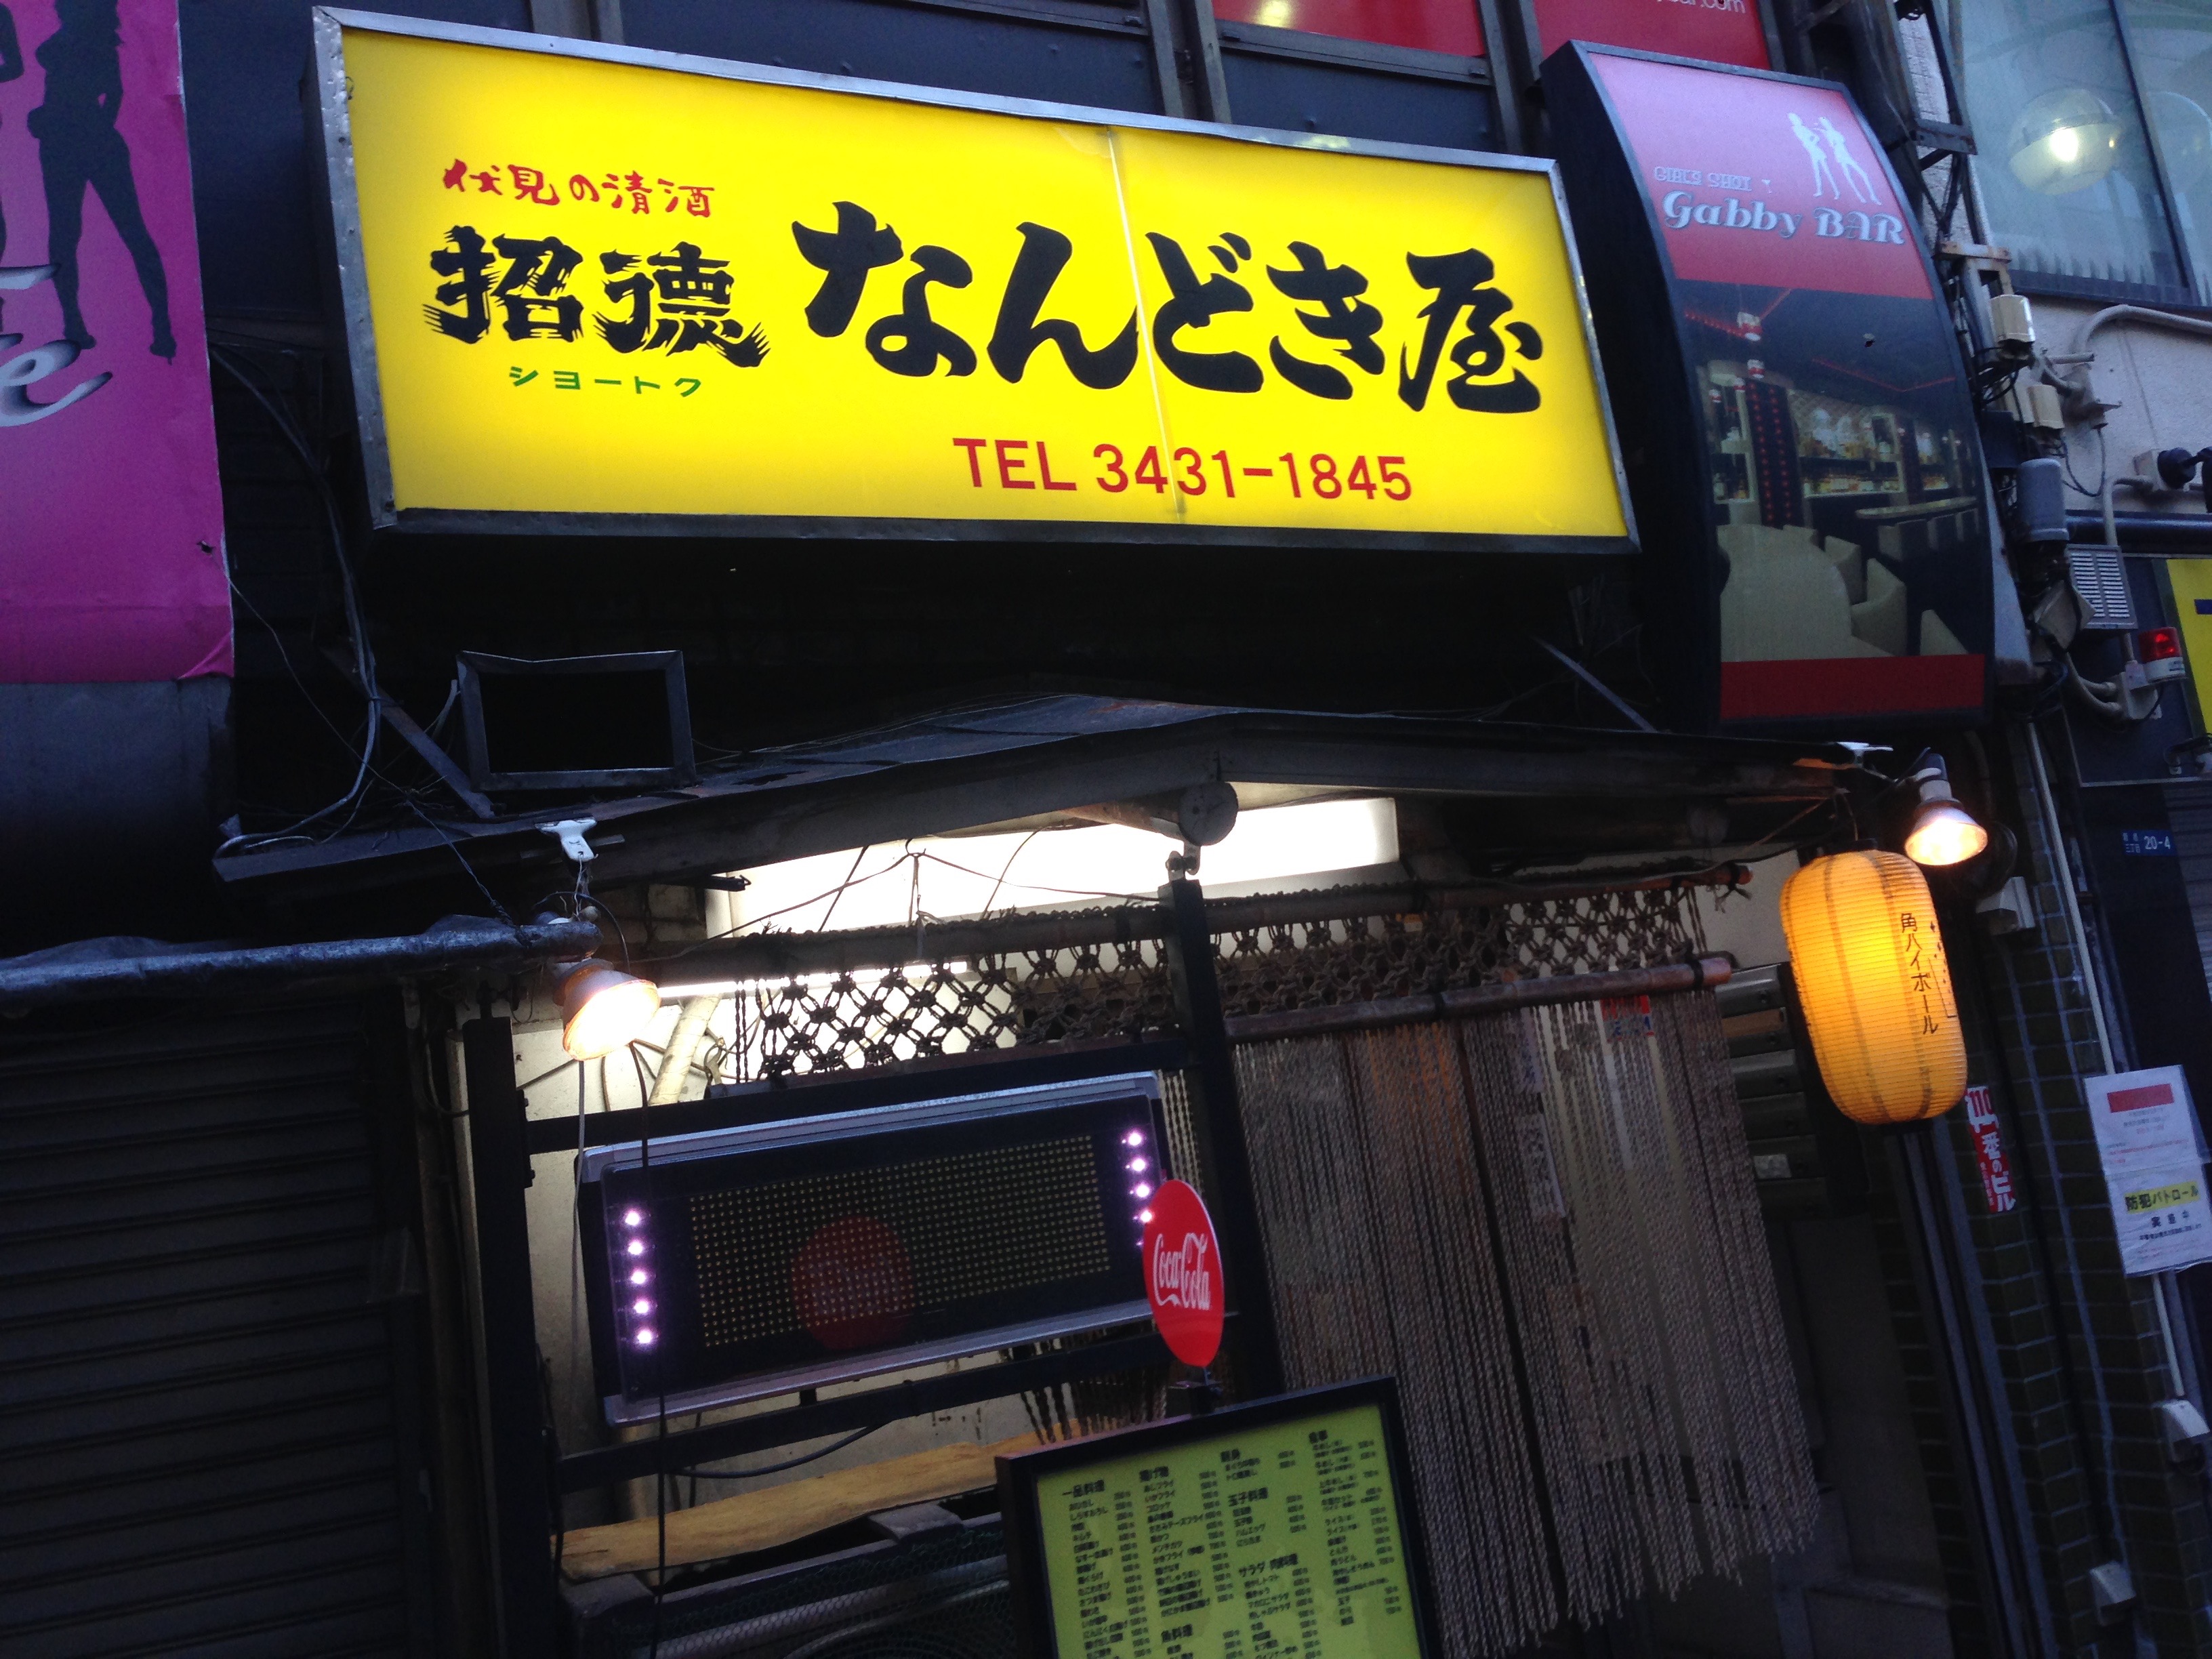 新橋駅の近くで朝からダラっと酒を飲む なんどき屋 東京都新橋 タベノミー